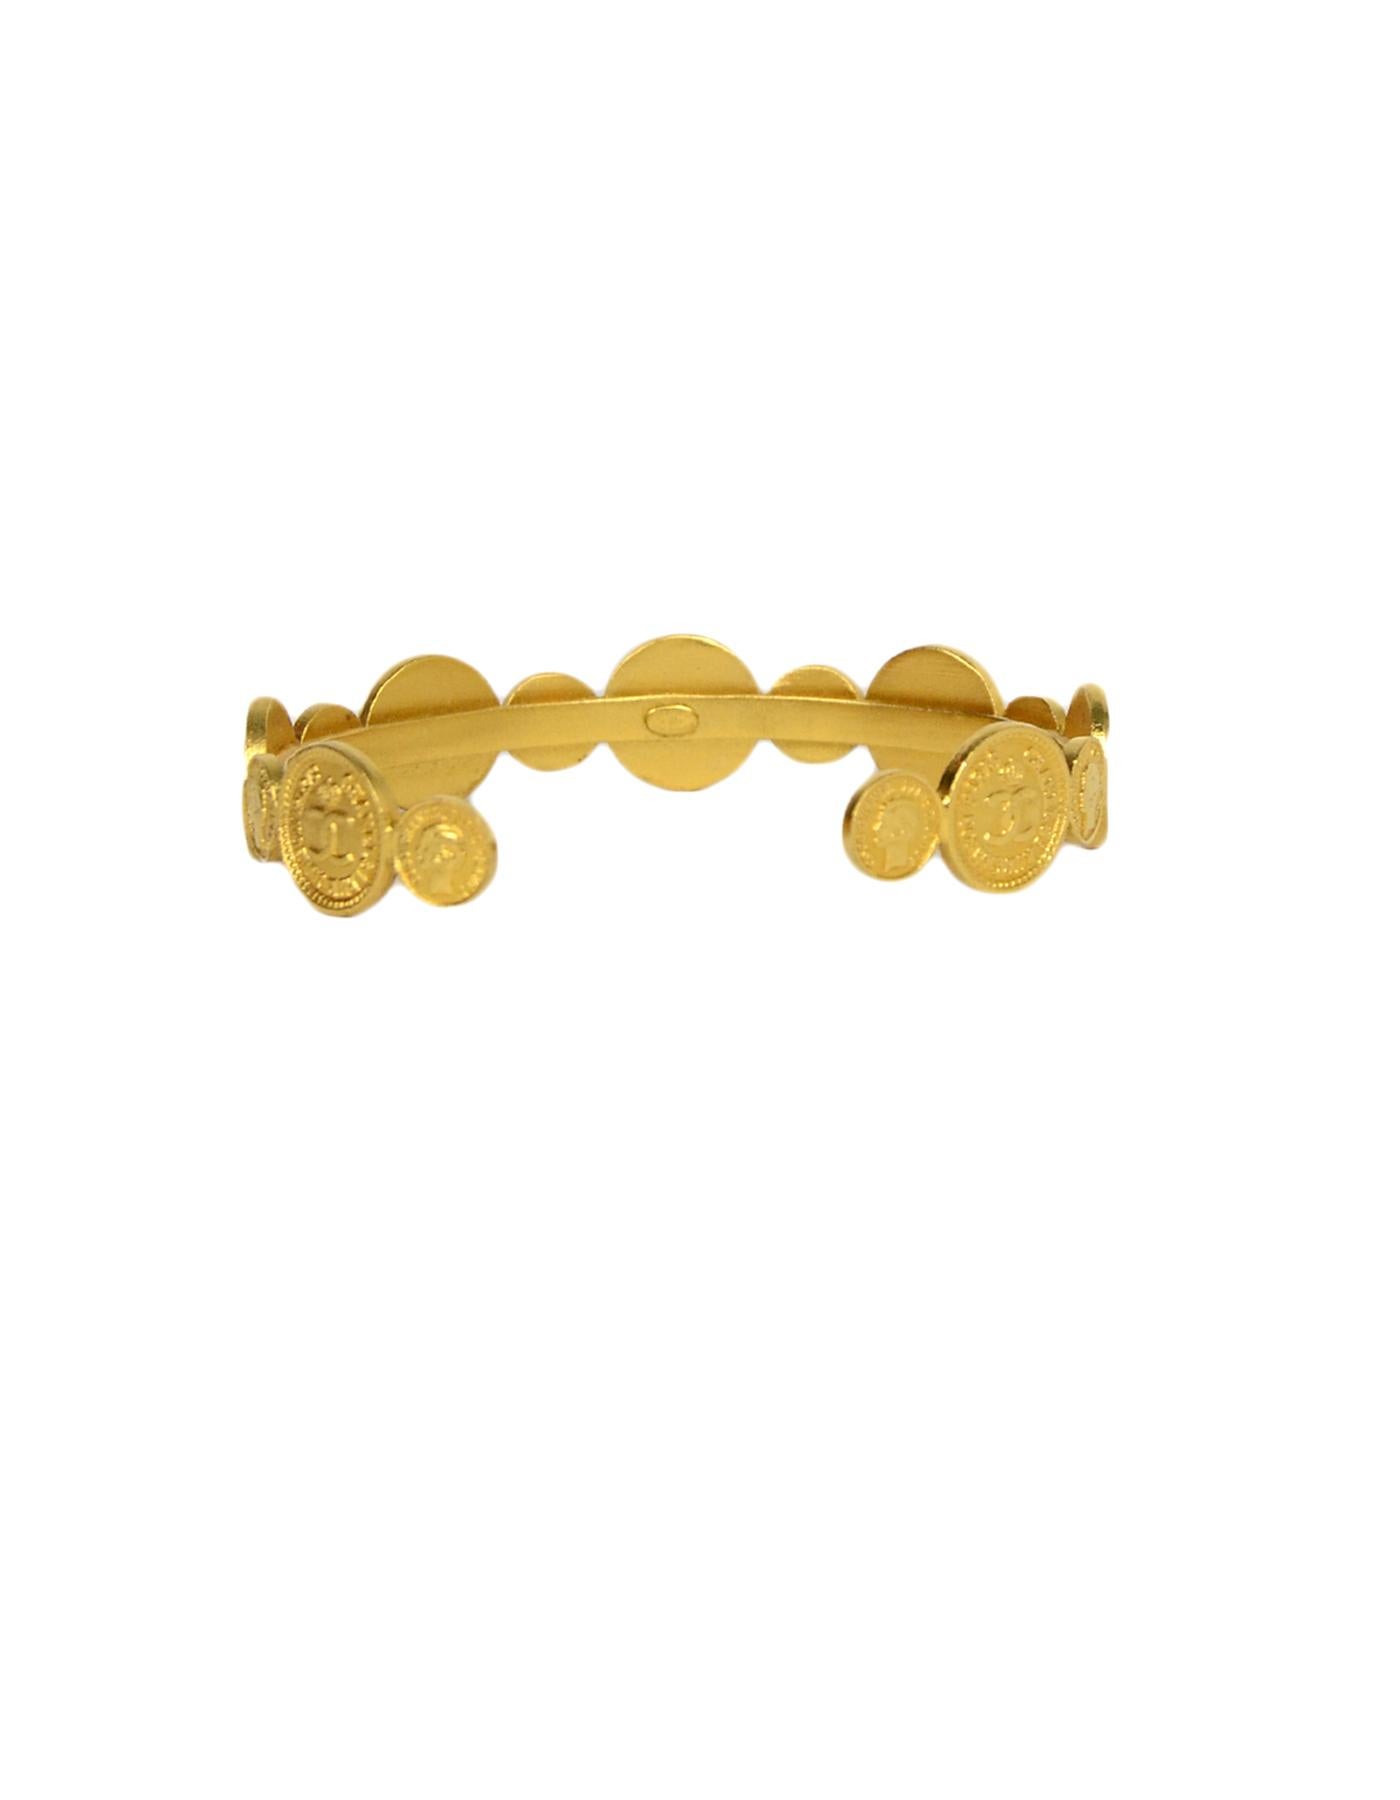 Chanel Vintage Goldtone CC Coin Cuff Bracelet.  Features .35